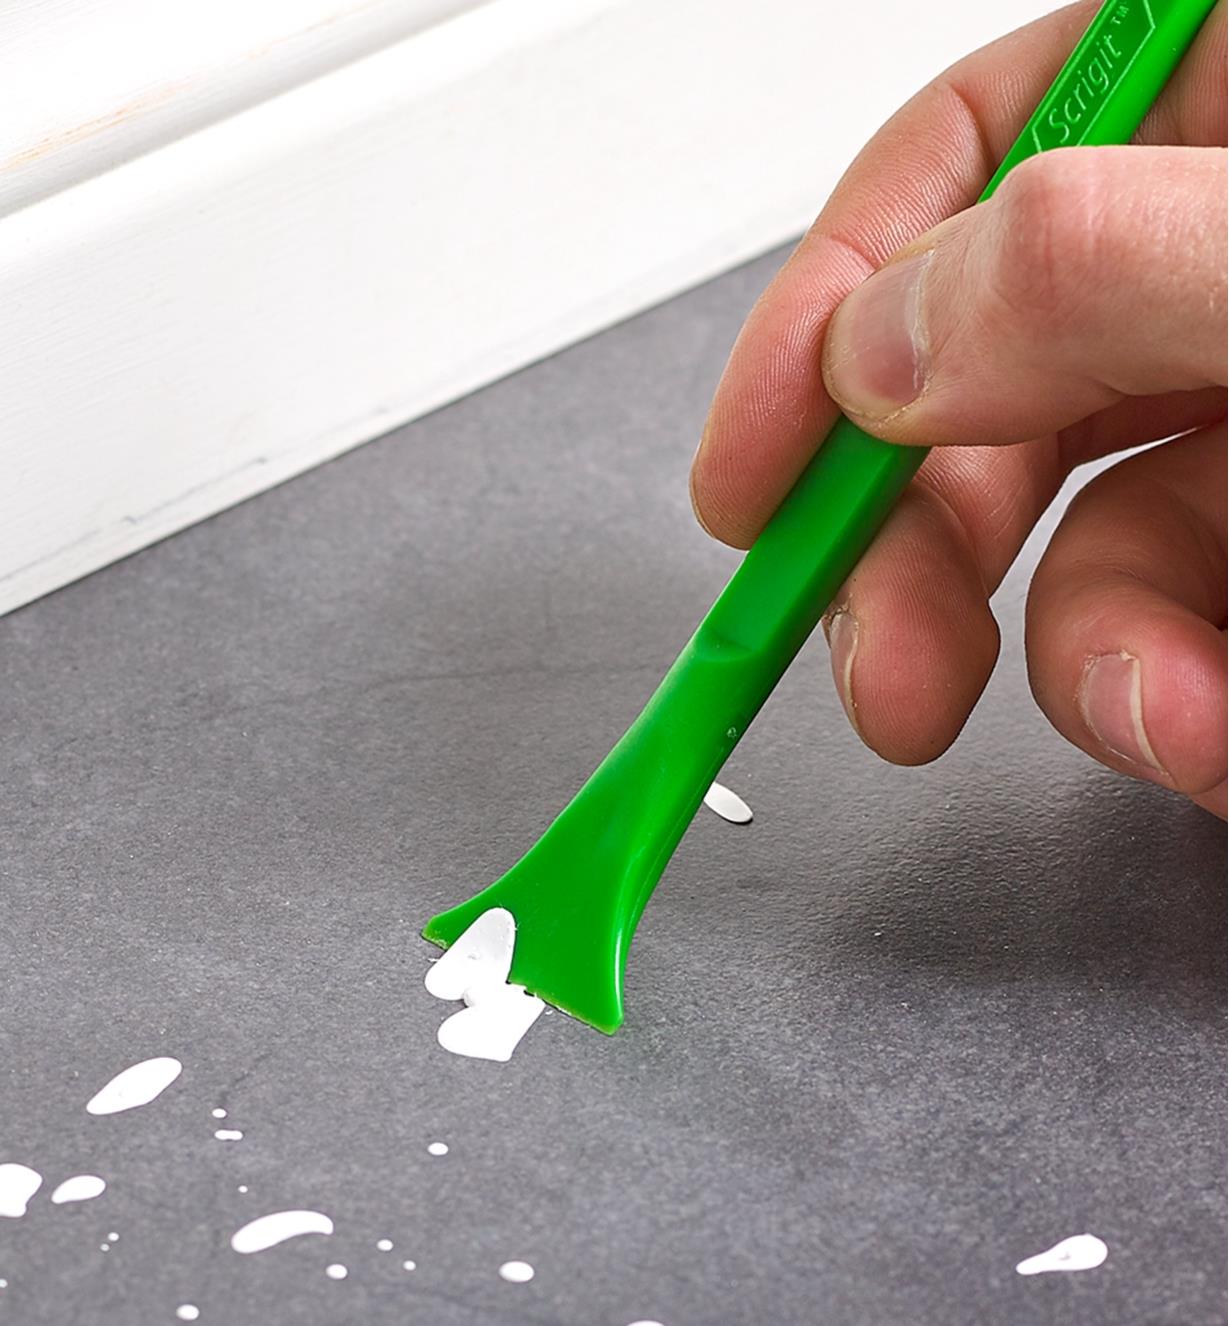 scrigit scraper no-scratch plastic scraper tool, 2 pack